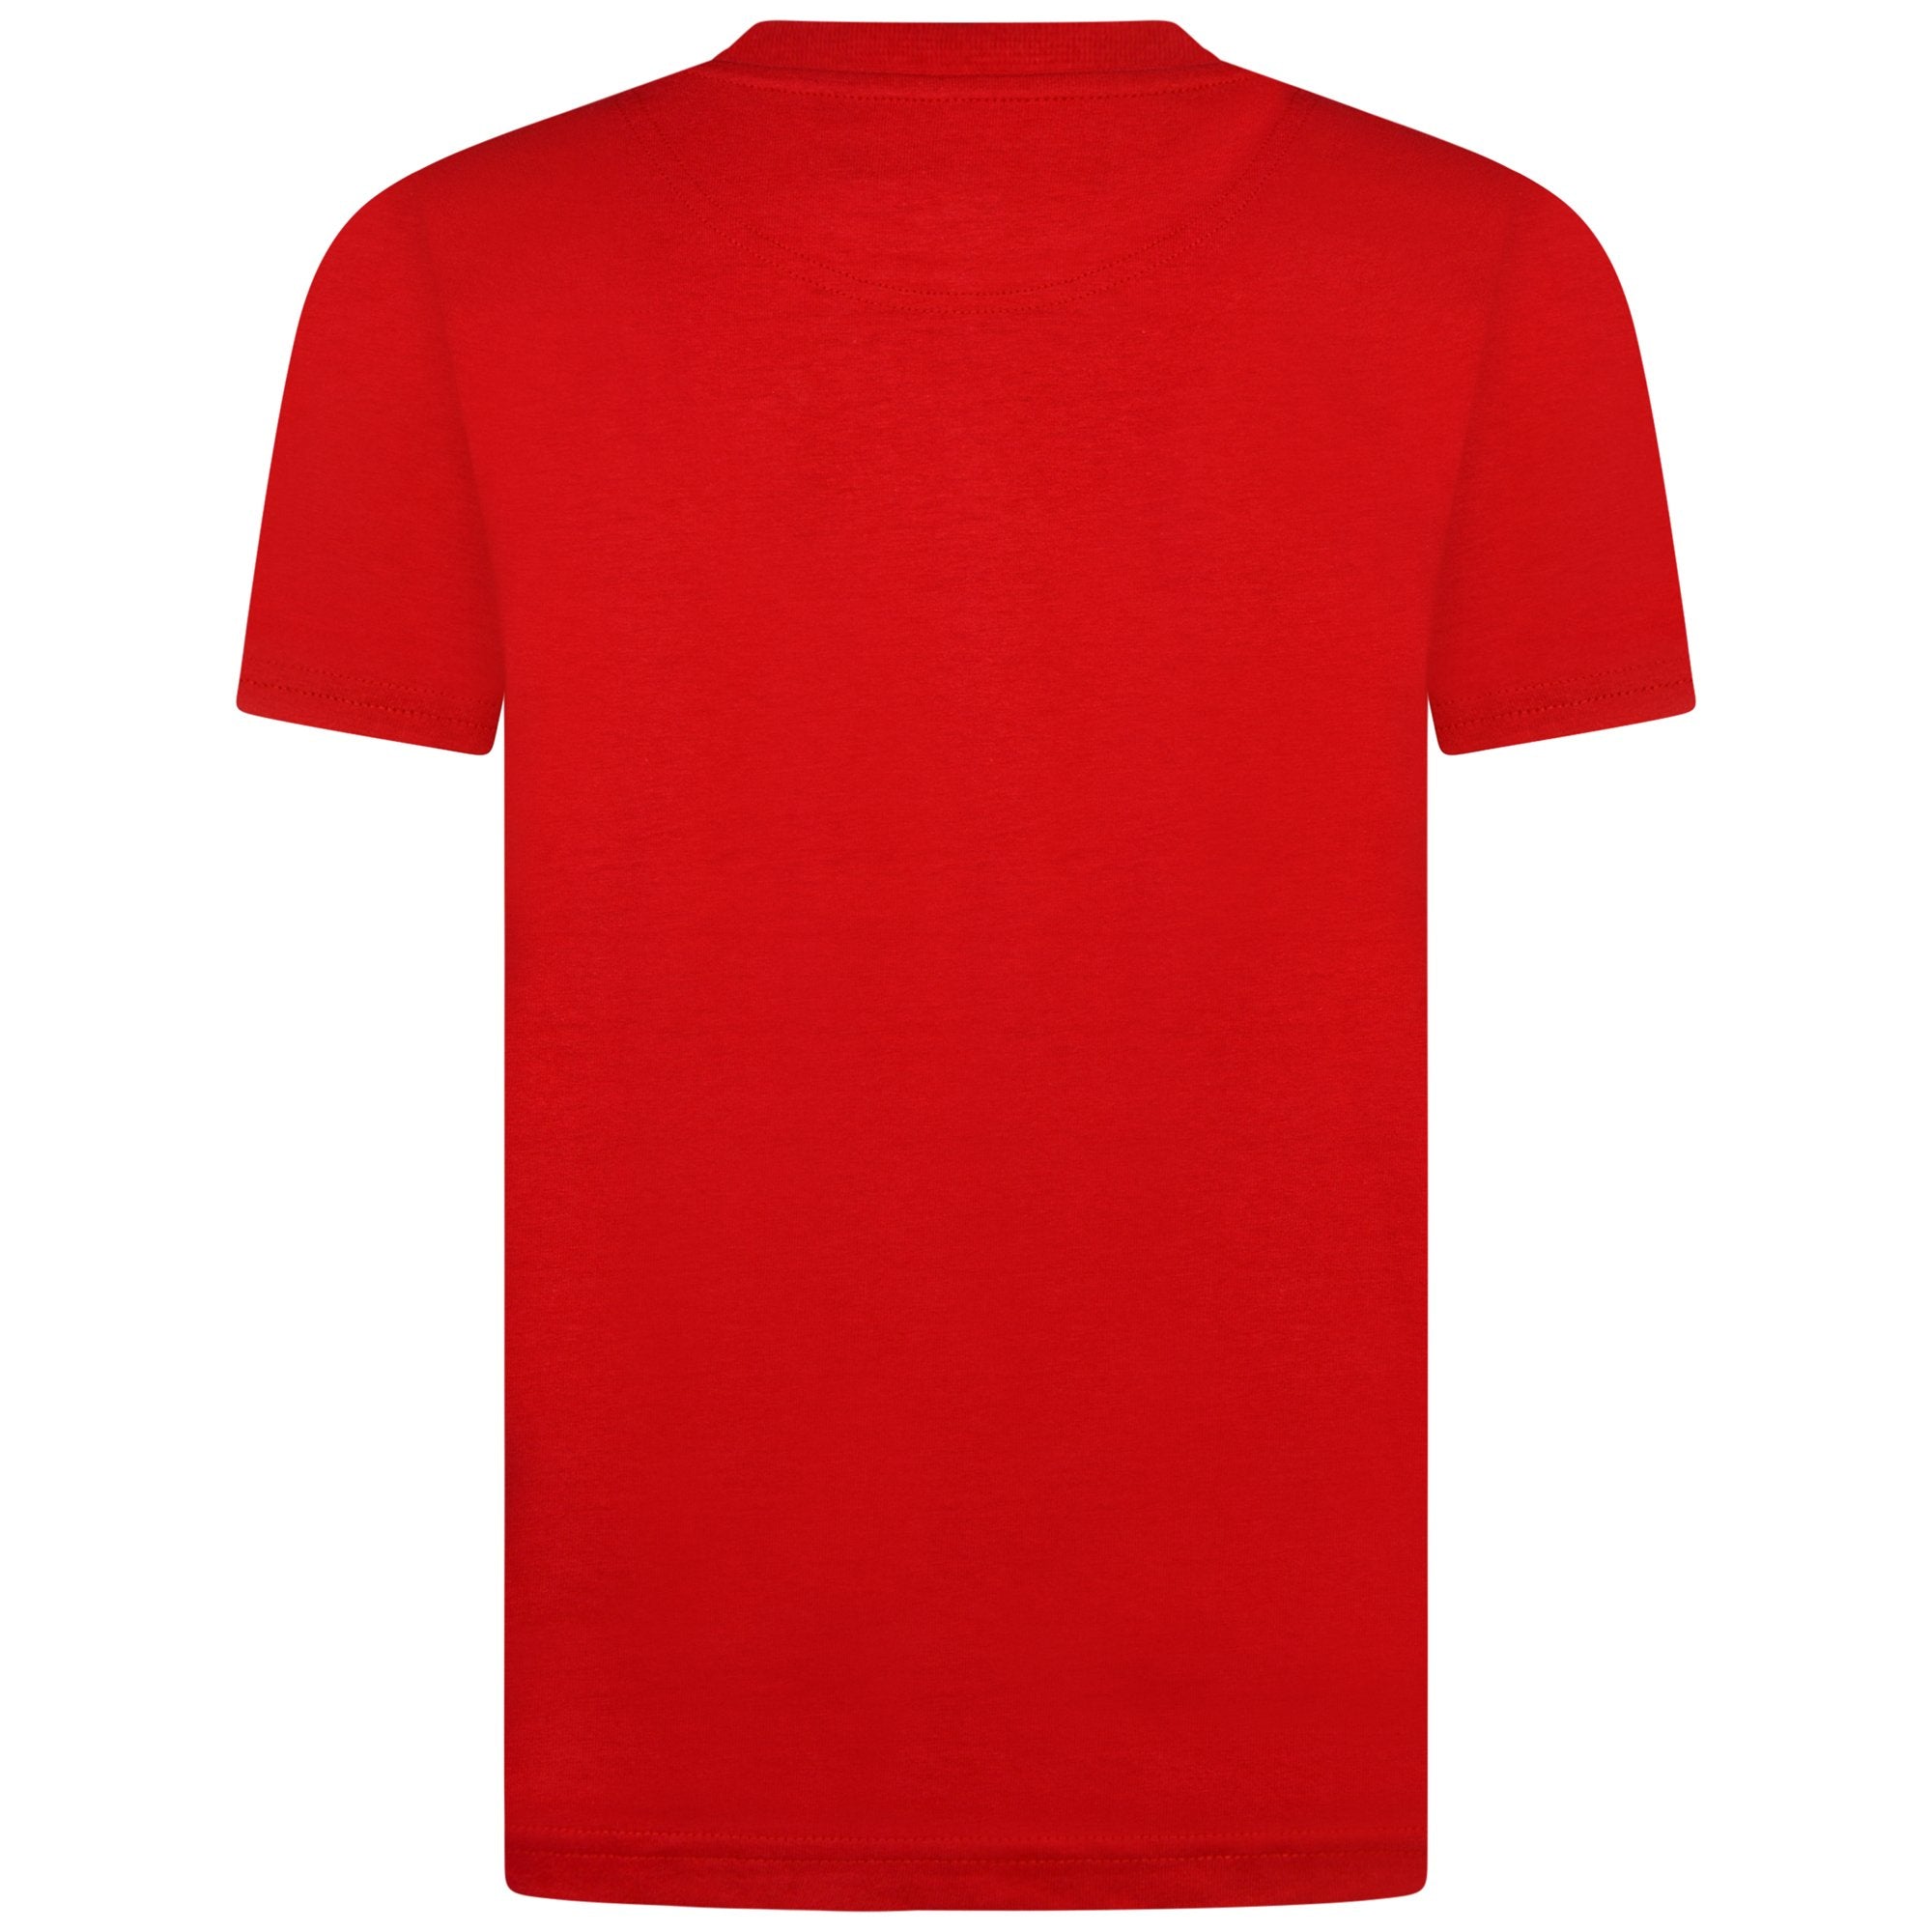 Jongens Classic T-Shirt Tango Red van Lyle & Scott in de kleur Tango Red in maat 170-176.